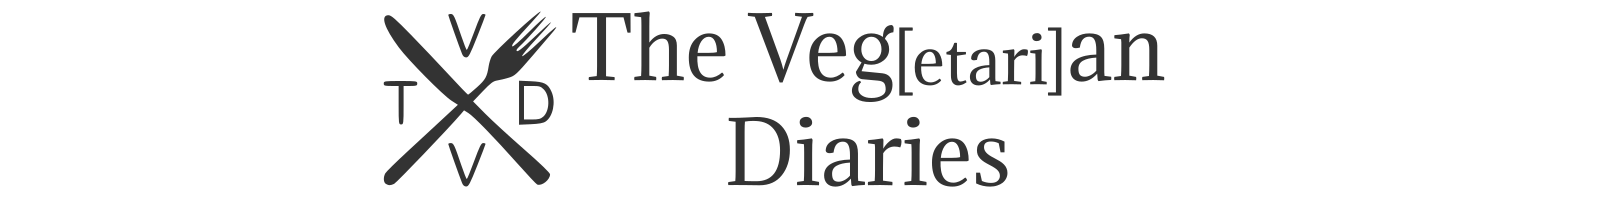 The Vegetarian Diaries